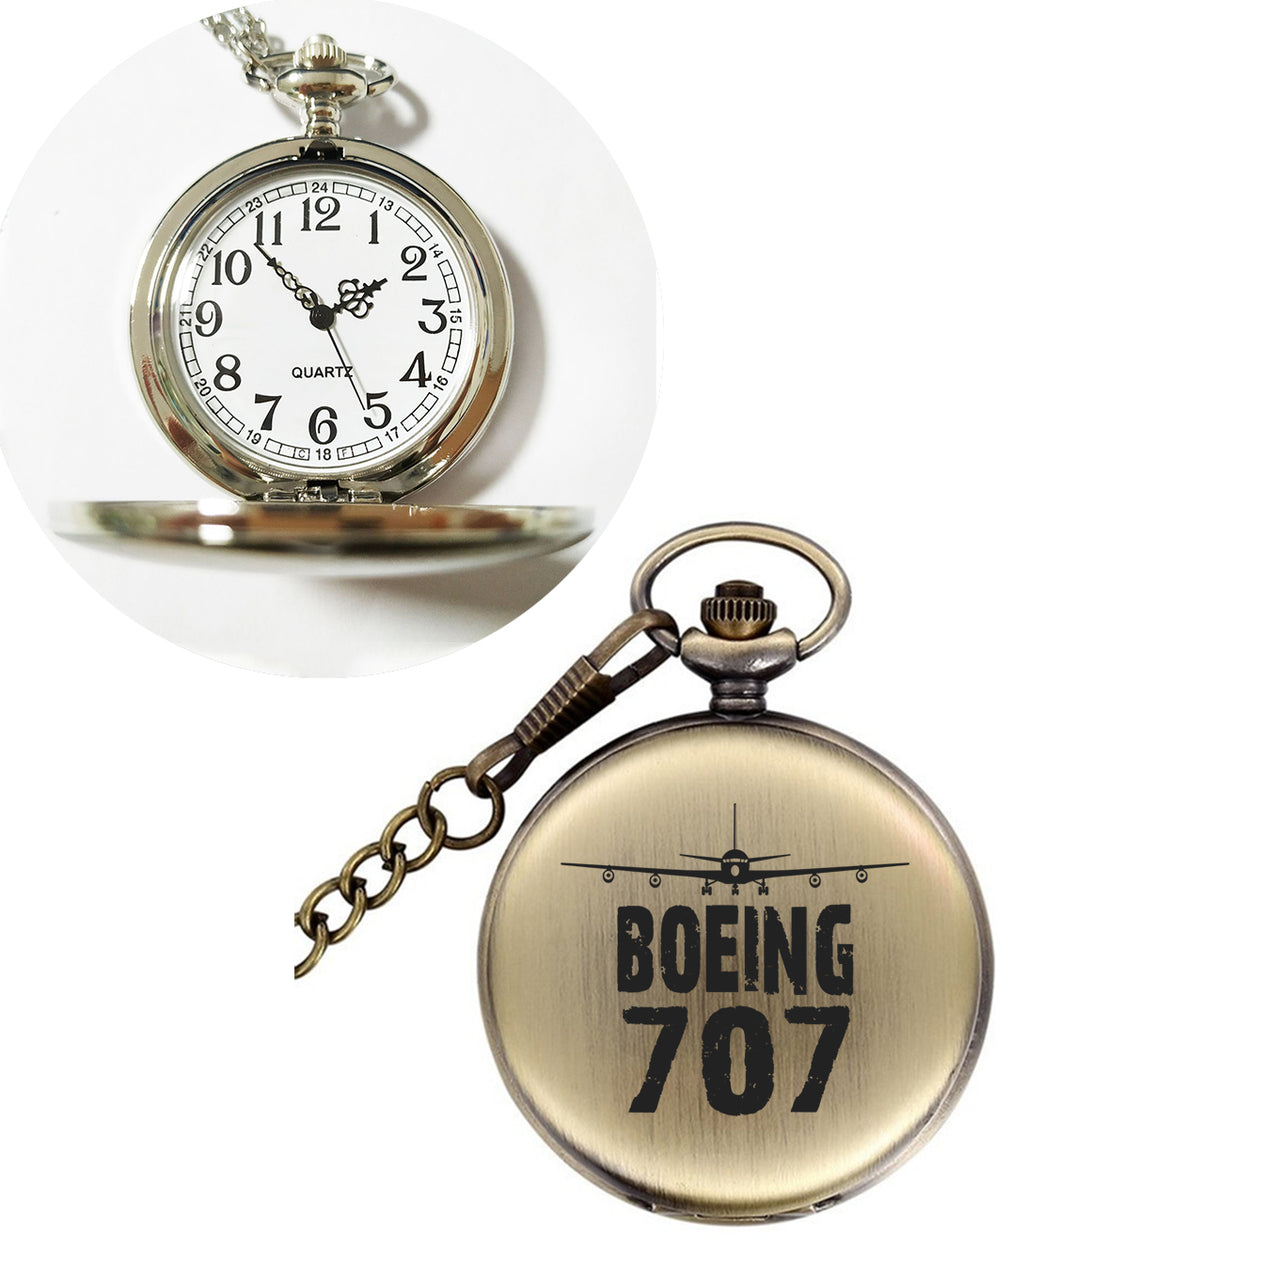 Boeing 707 & Plane Designed Pocket Watches